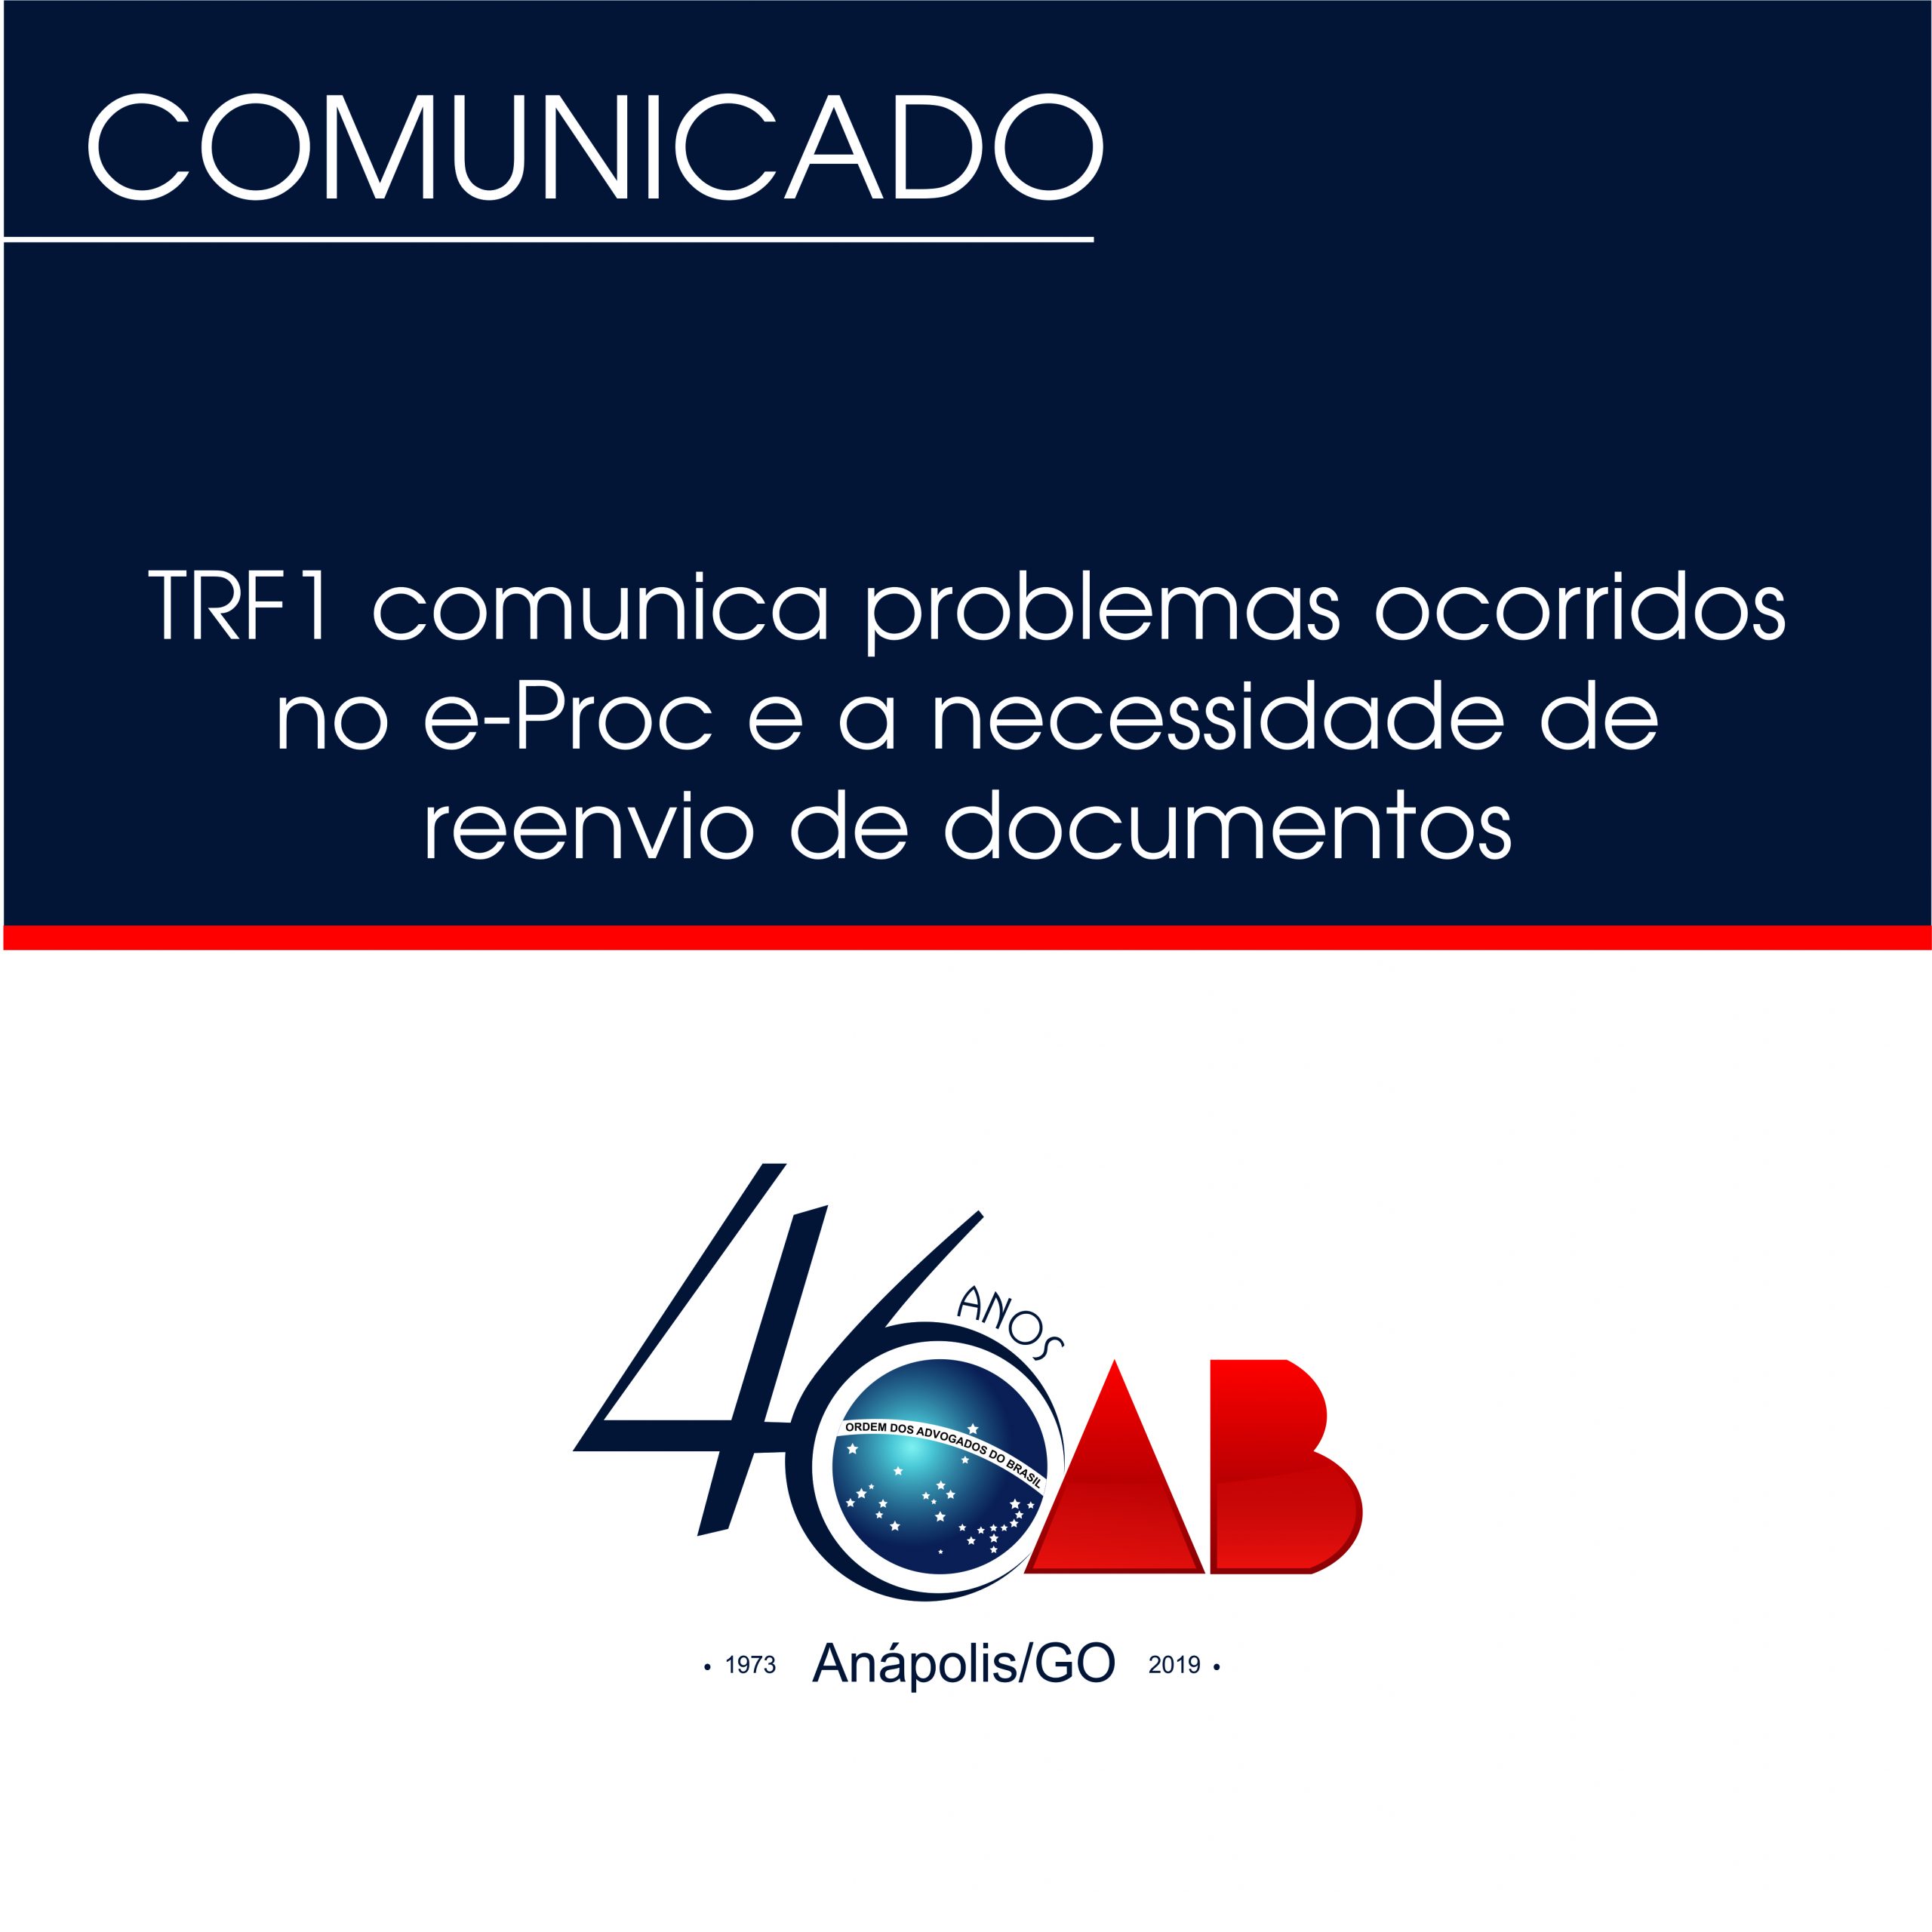 TRF1 comunica problemas ocorridos no e-Proc e a necessidade de reenvio de documentos